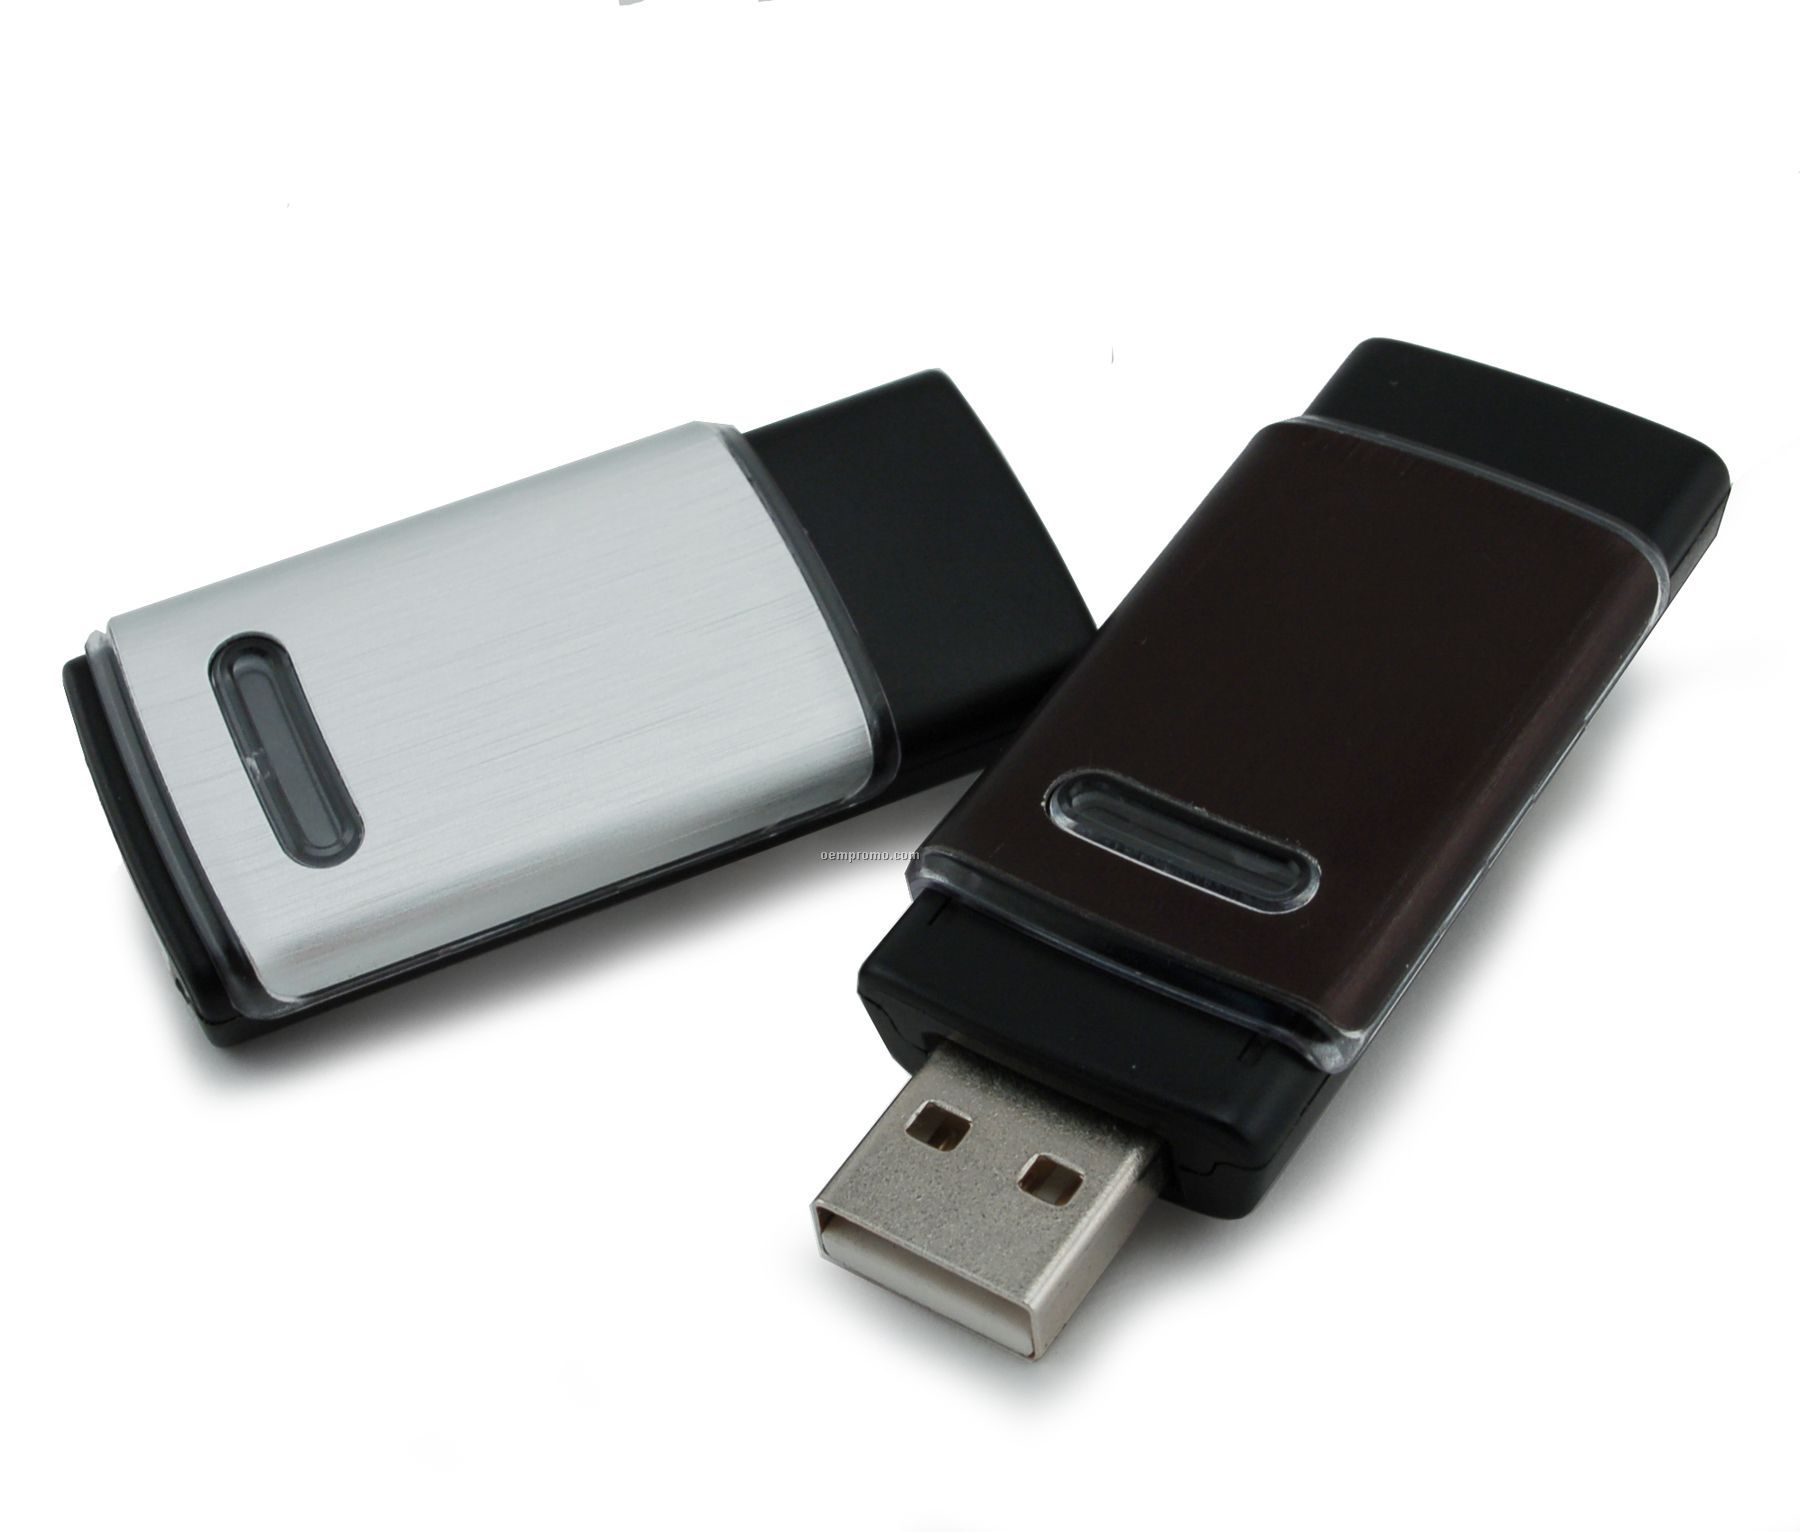 1 Gb Retractable USB Drive 600 Series